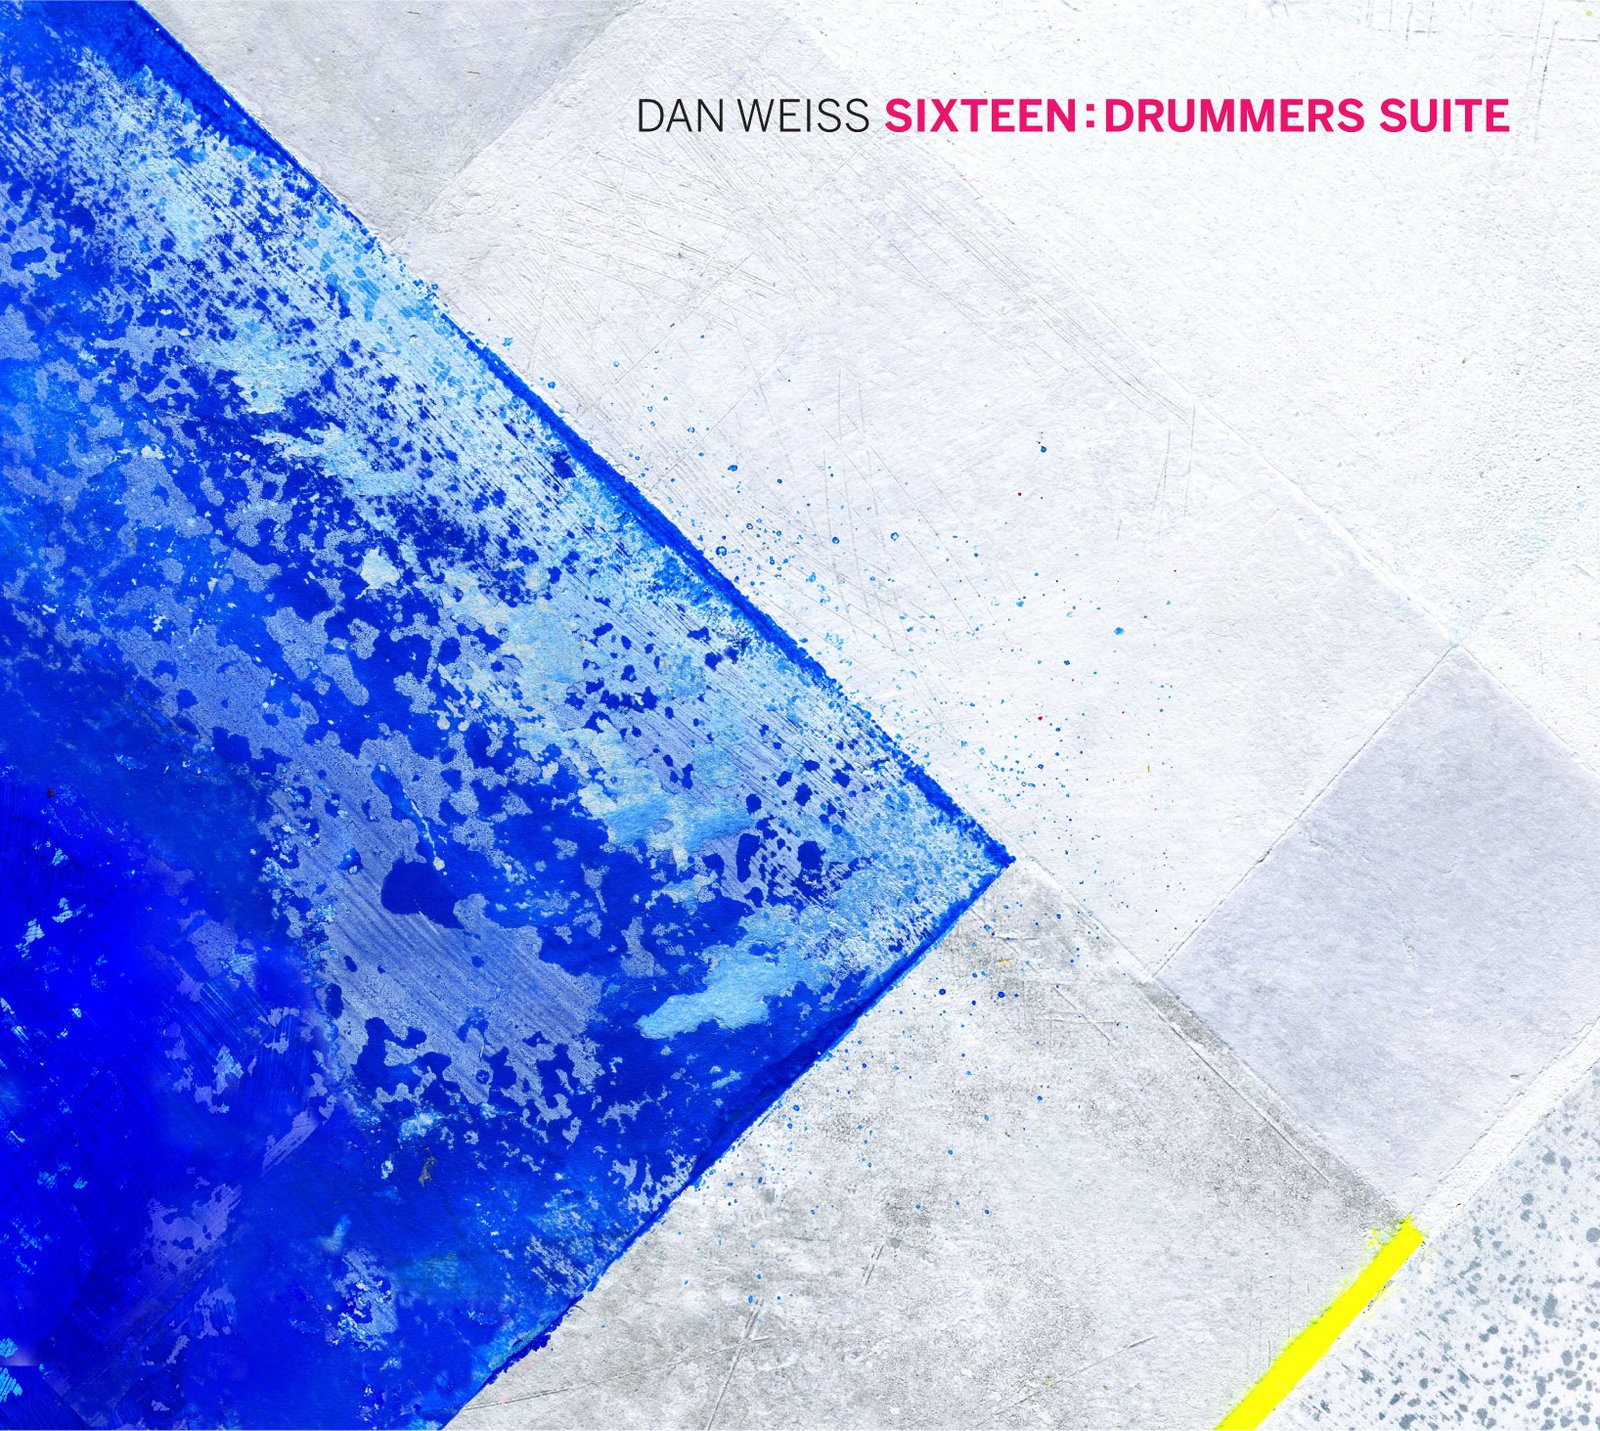 Sixteen: Drummer's Suite - Dan Weiss